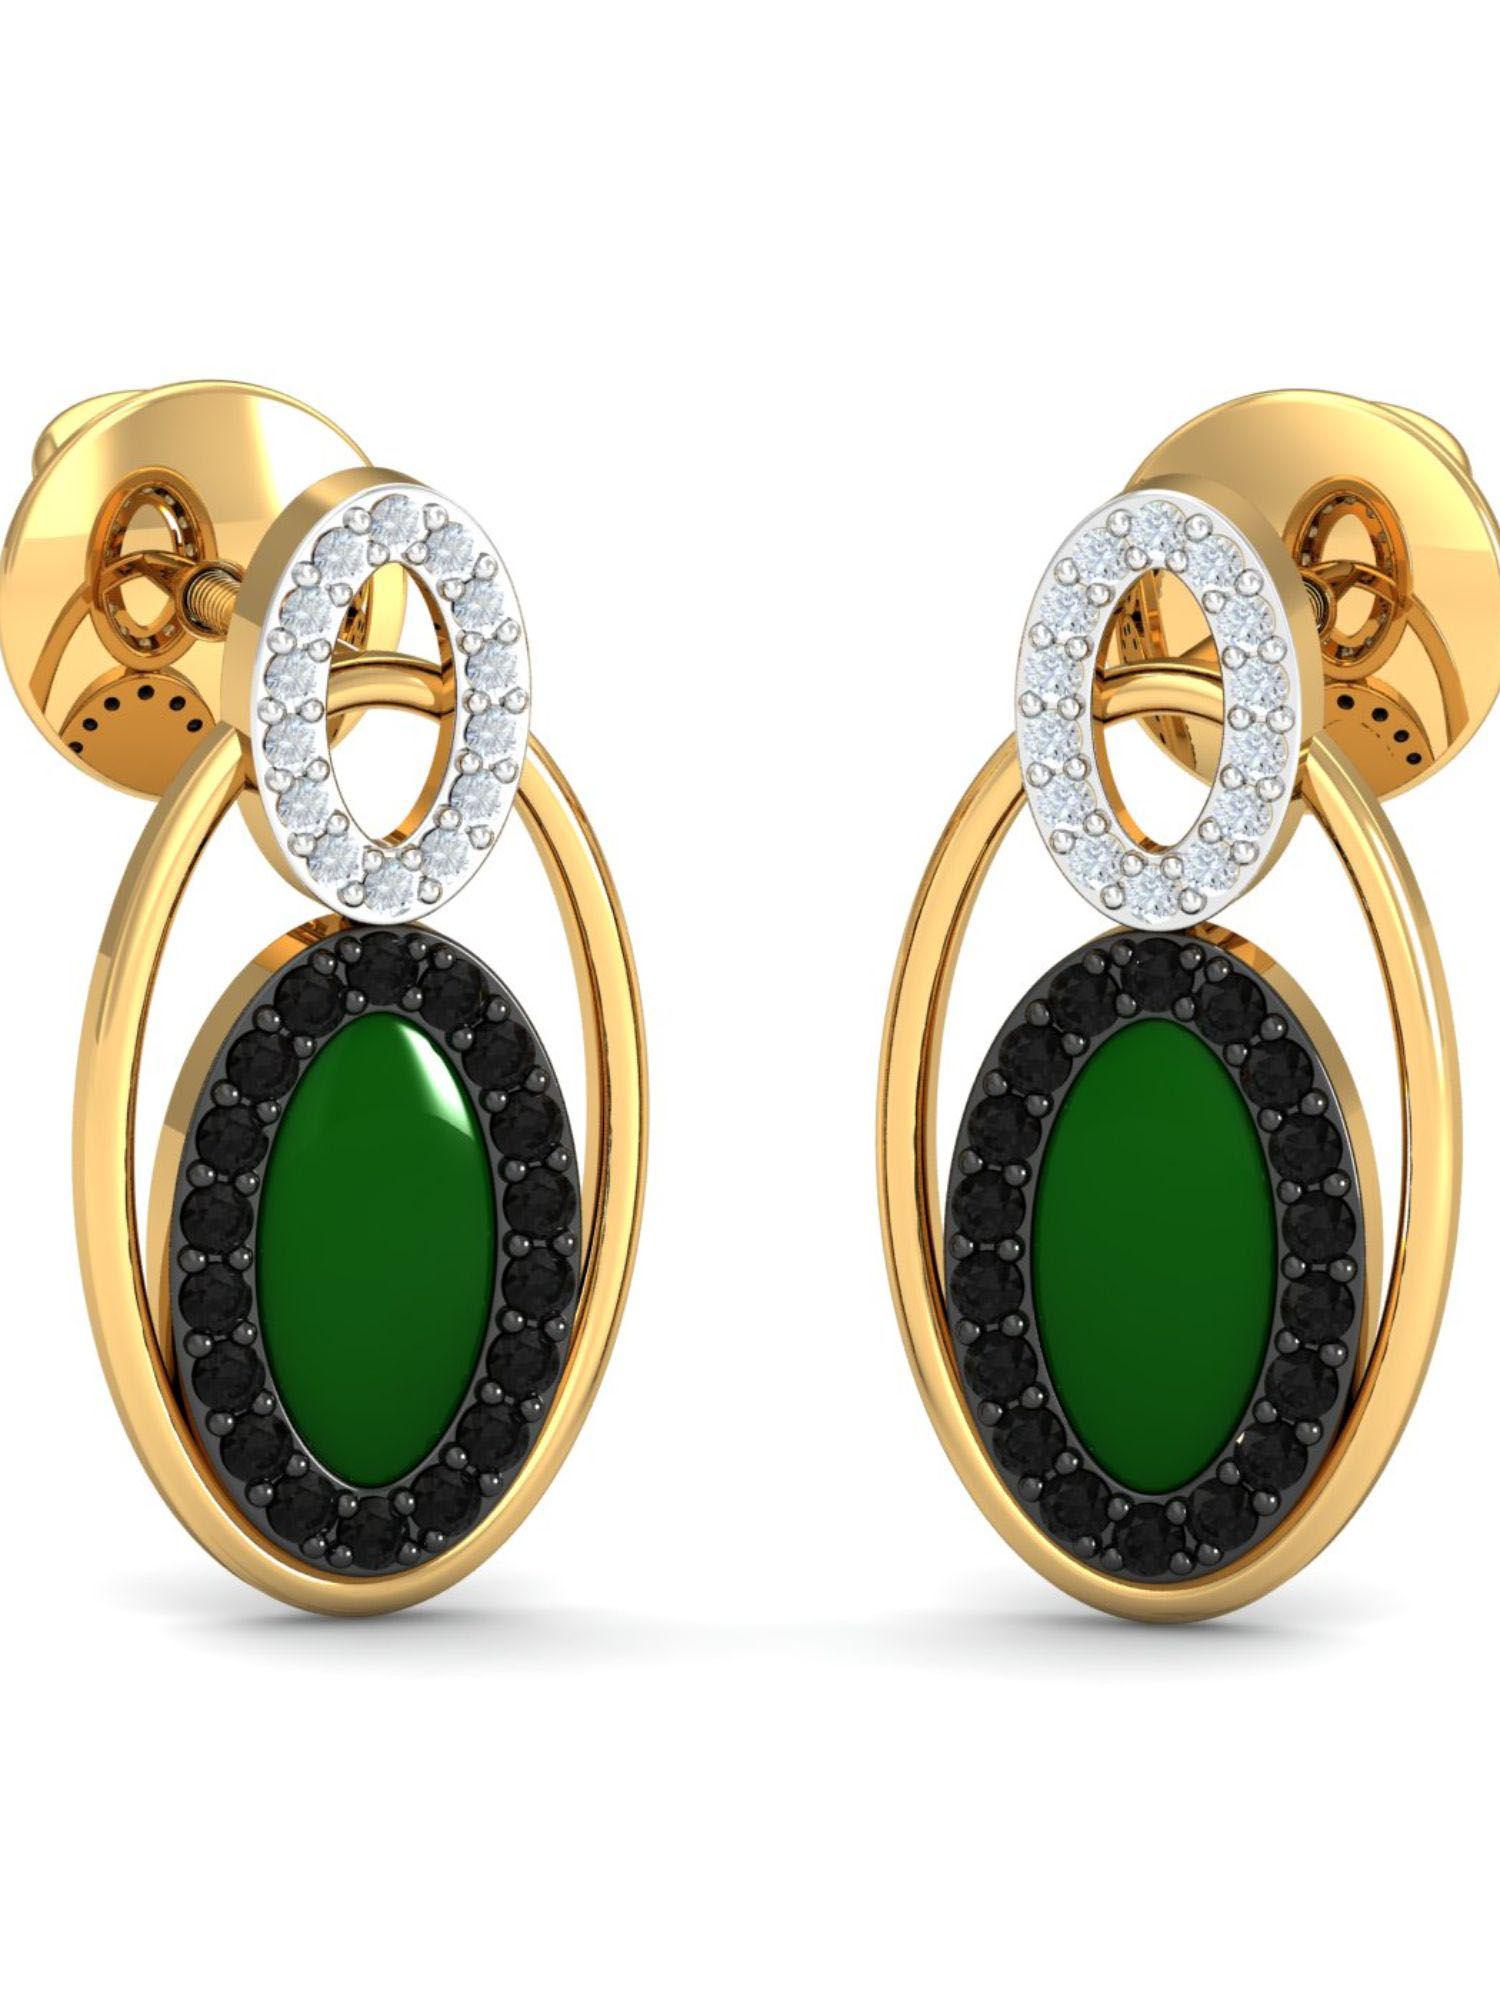 18k medu enamel stud earrings for women and girls